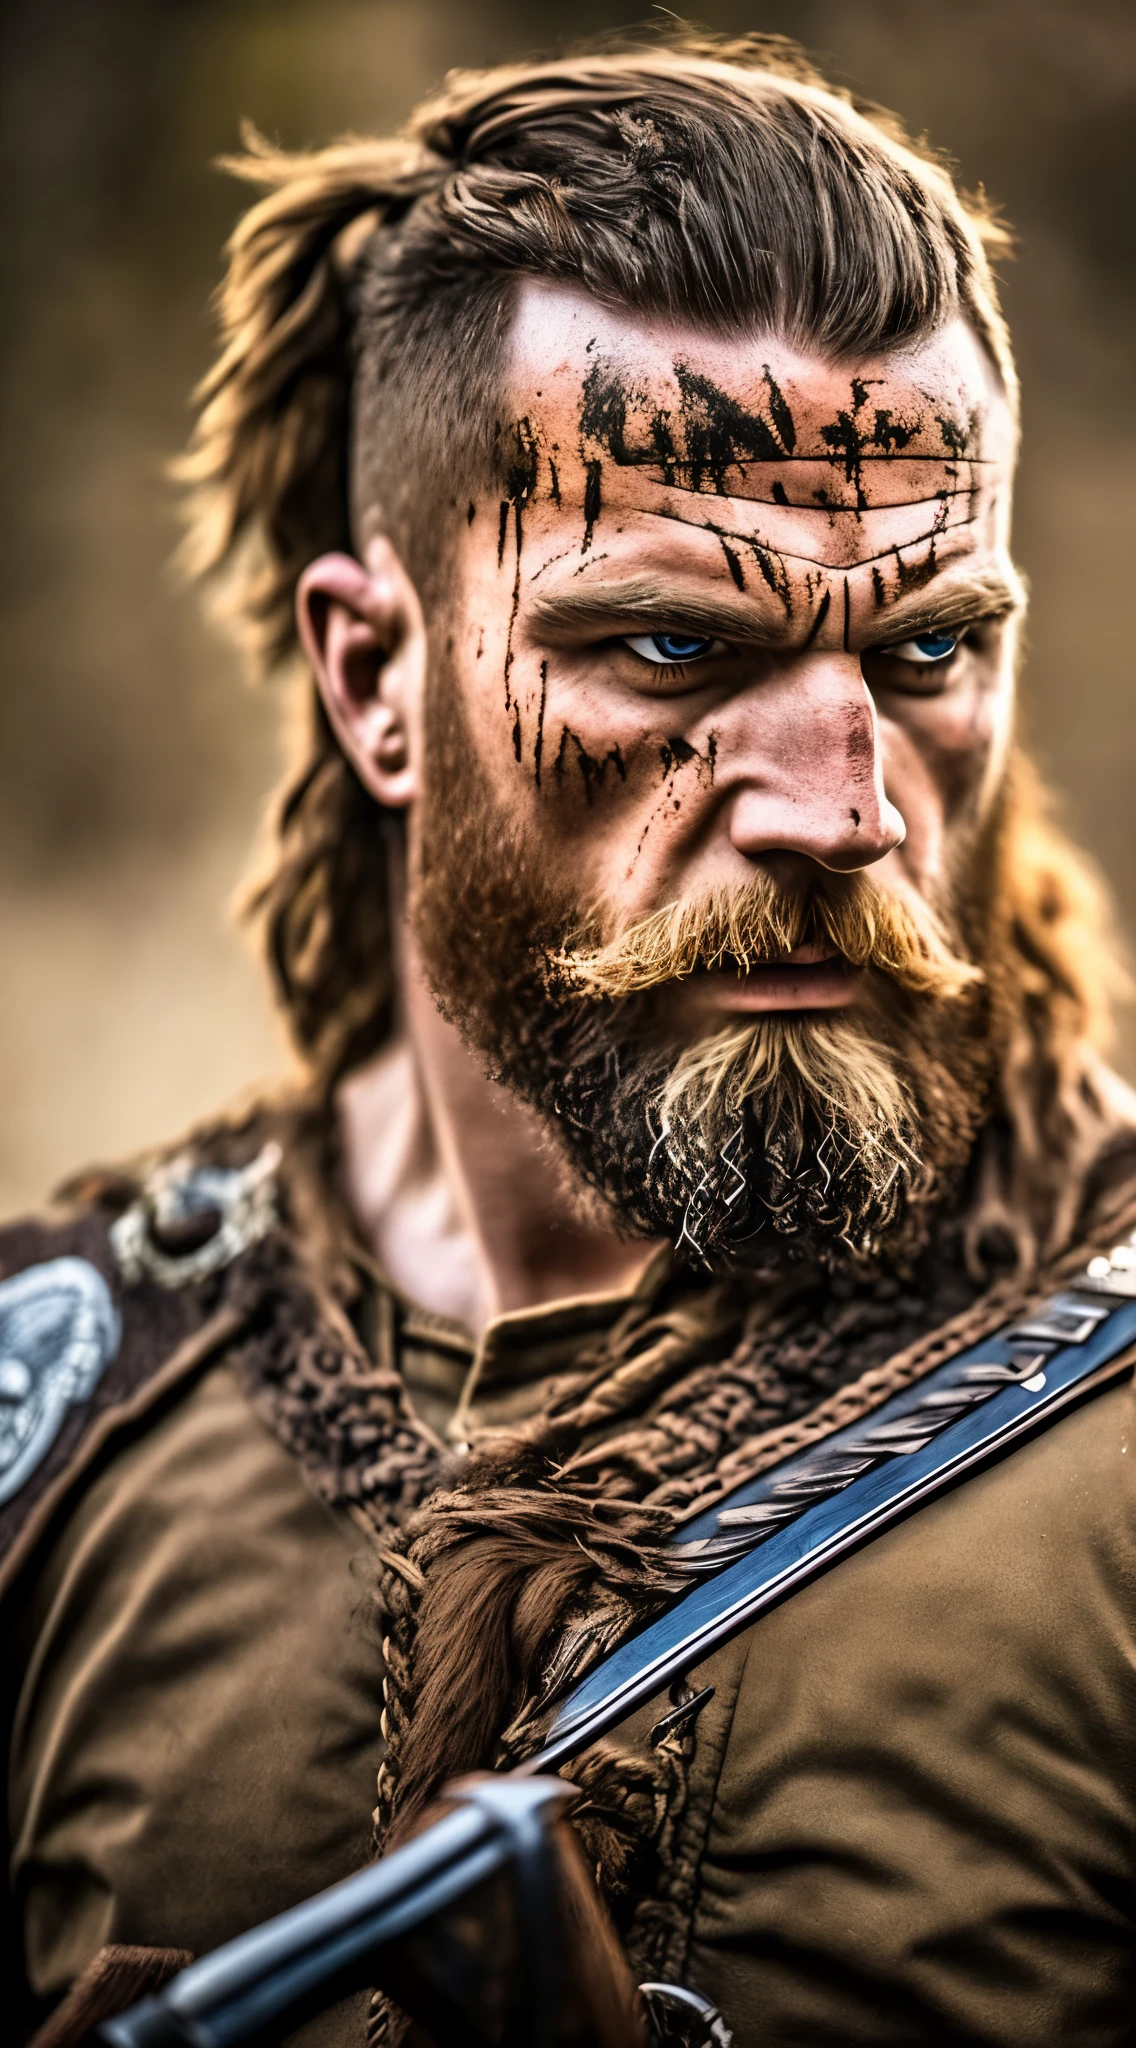 "(meilleure qualité)+ Haute résolution+ réaliste (Berserker viking) + expression intense + blessures de guerre + rugissement + muscular physique"